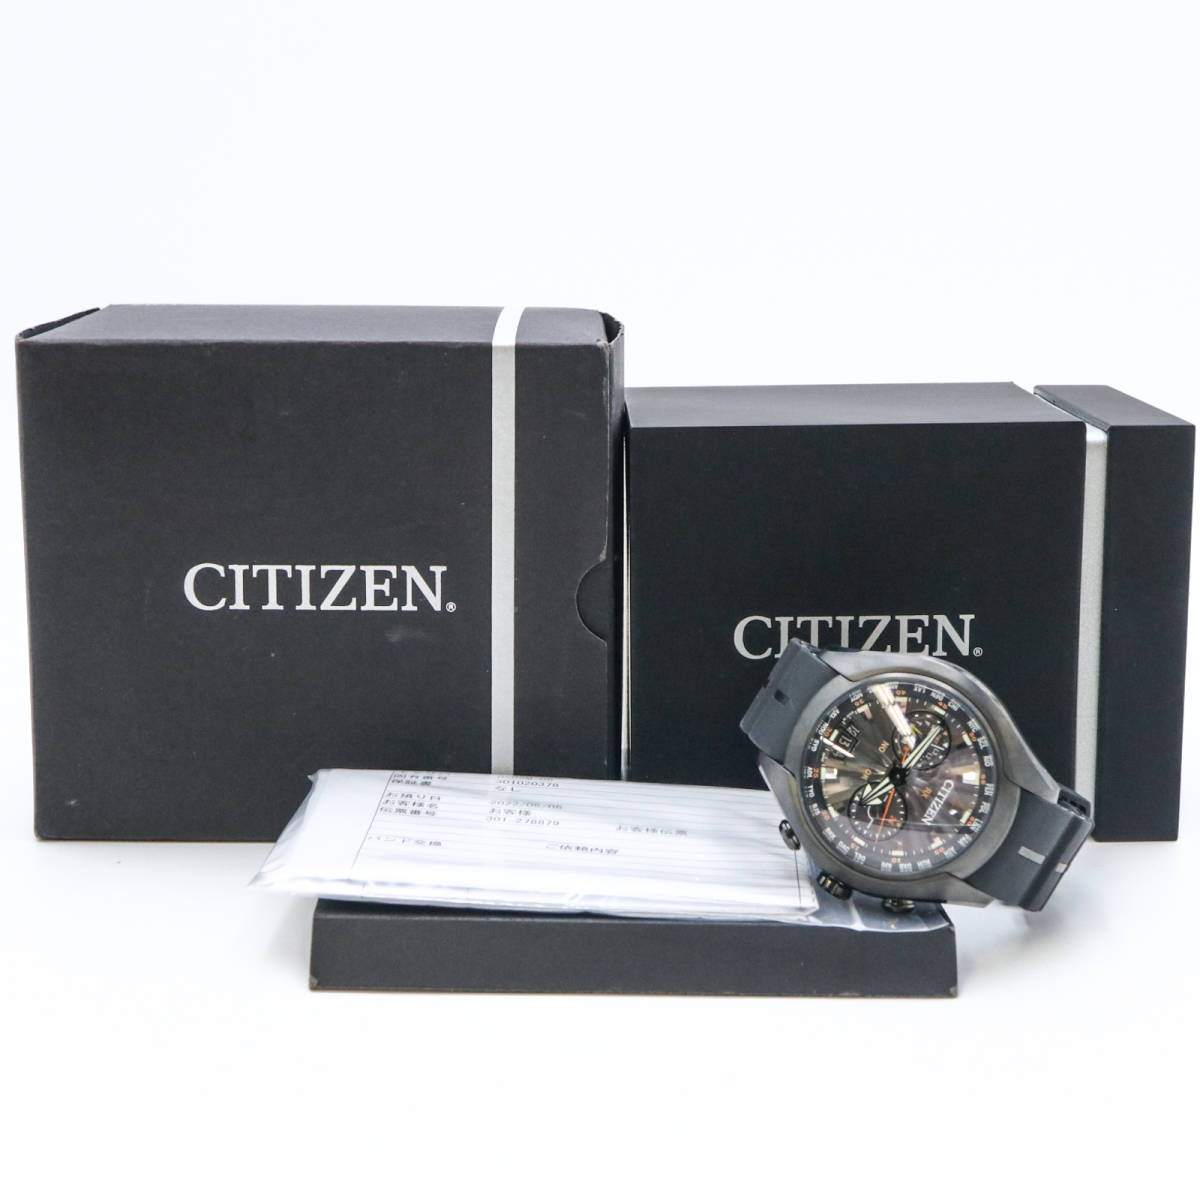 【CITIZEN】シチズン プロマスターサテライトウェーブ H909-S085012 ソーラー電波 メンズ腕時計 - 4